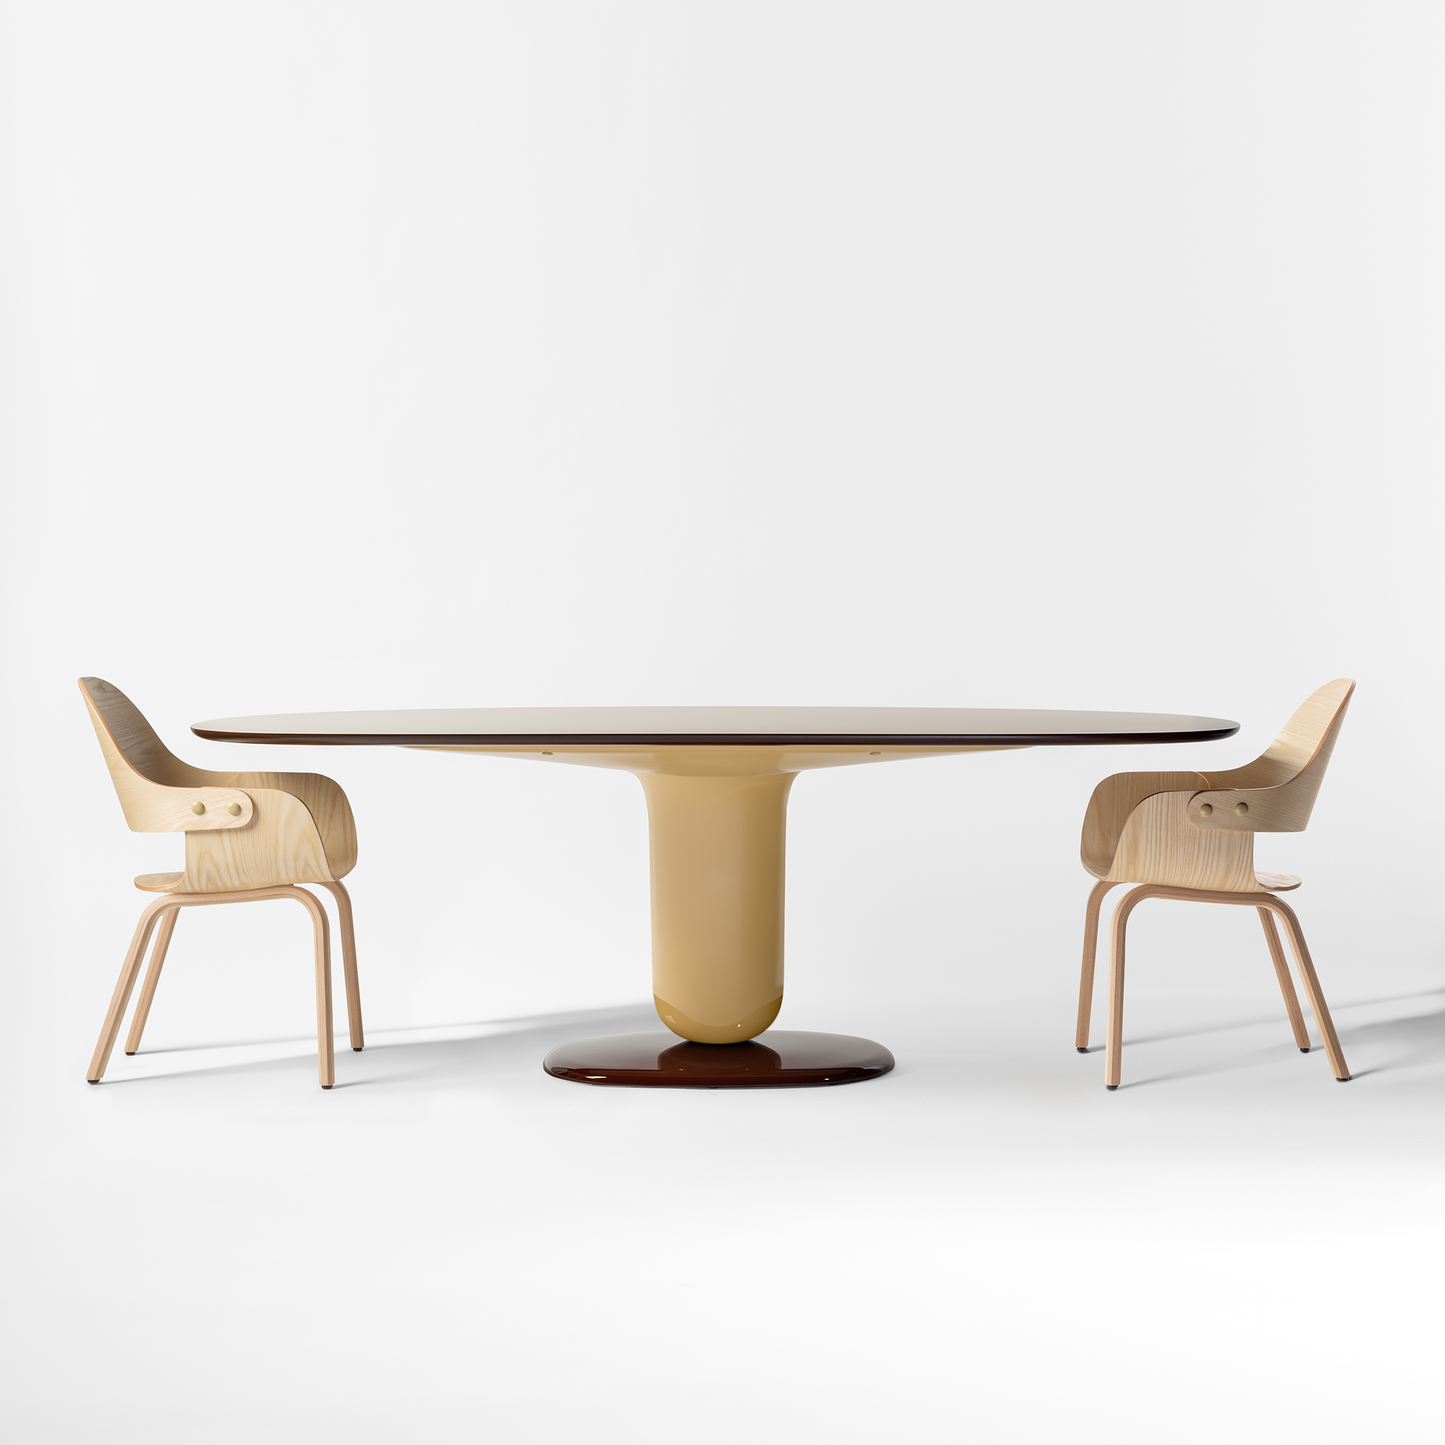 BD Barcelona Design Explorer dining table stalas